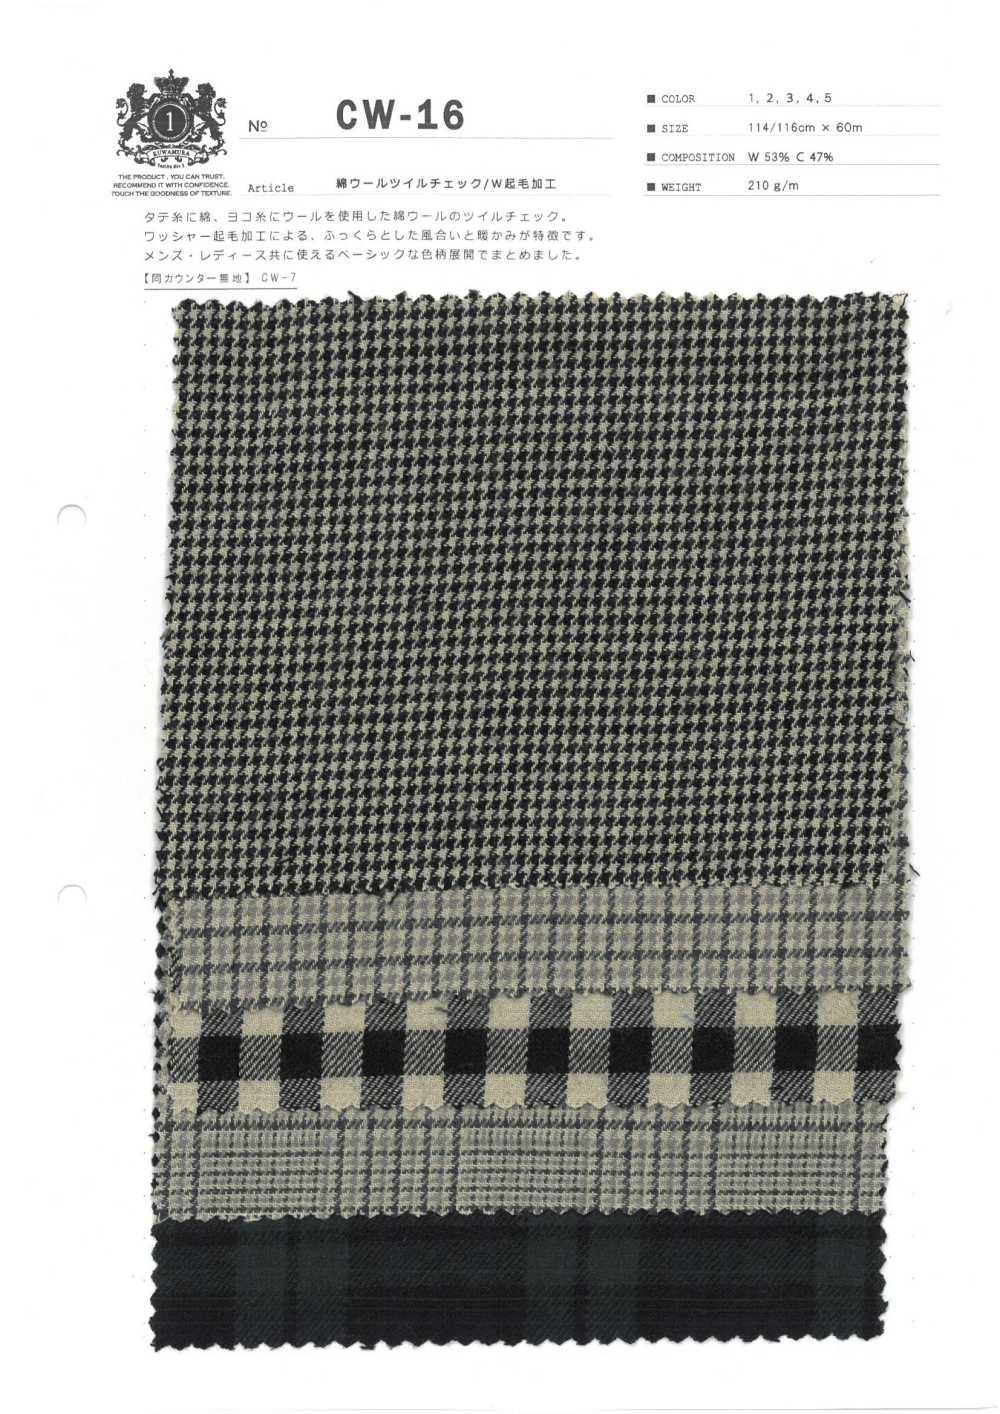 CW-16 Sarja De Algodão Xadrez/W Fuzzy Processamento[Têxtil / Tecido] Fibra Kuwamura